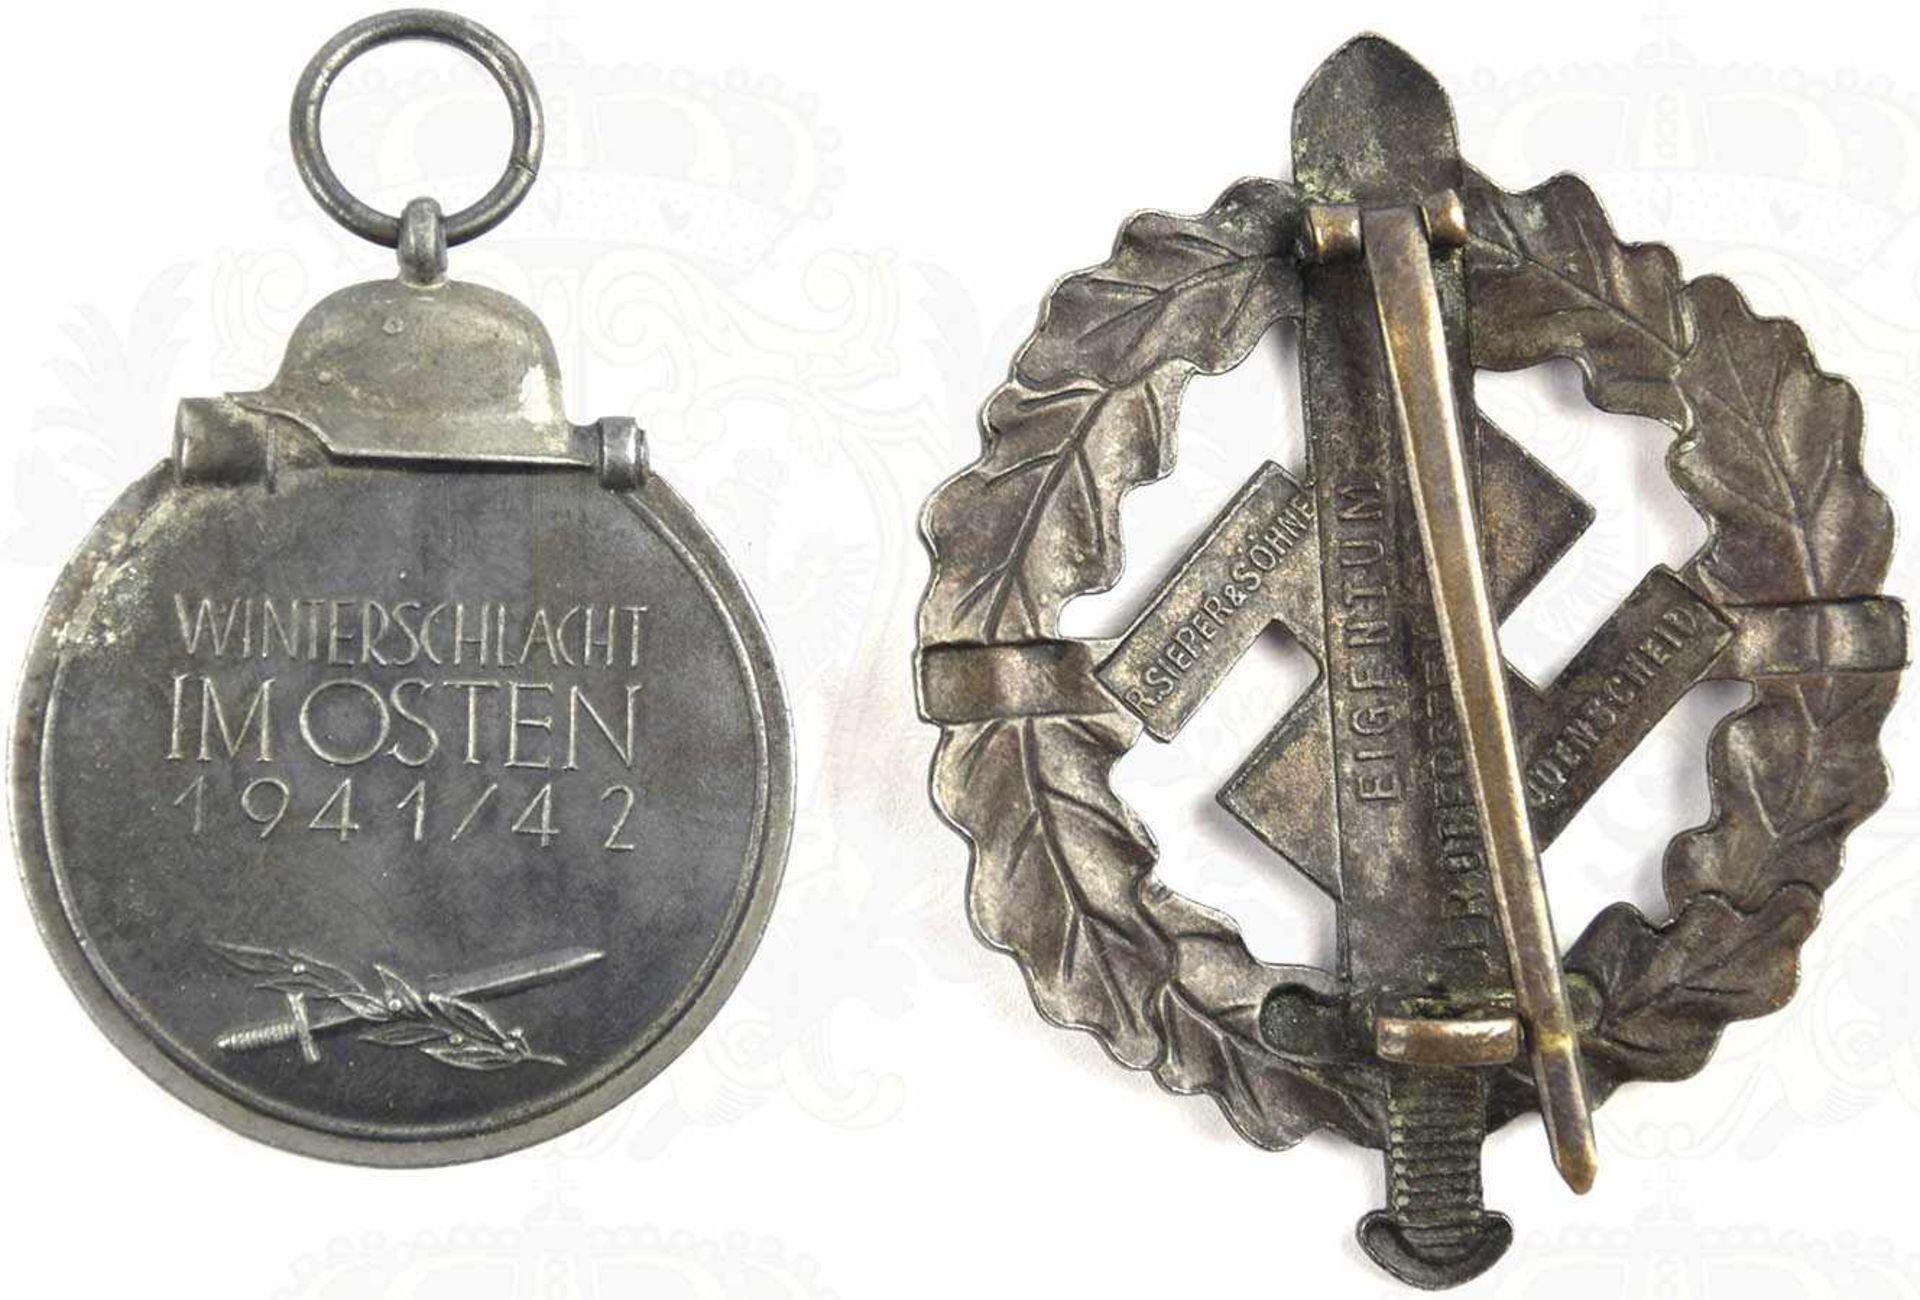 EHRENZEICHENGRUPPE EINES SOLDATEN, Medaille Winterschlacht im Osten 1941/42, Feinzink/patiniert, - Bild 3 aus 3